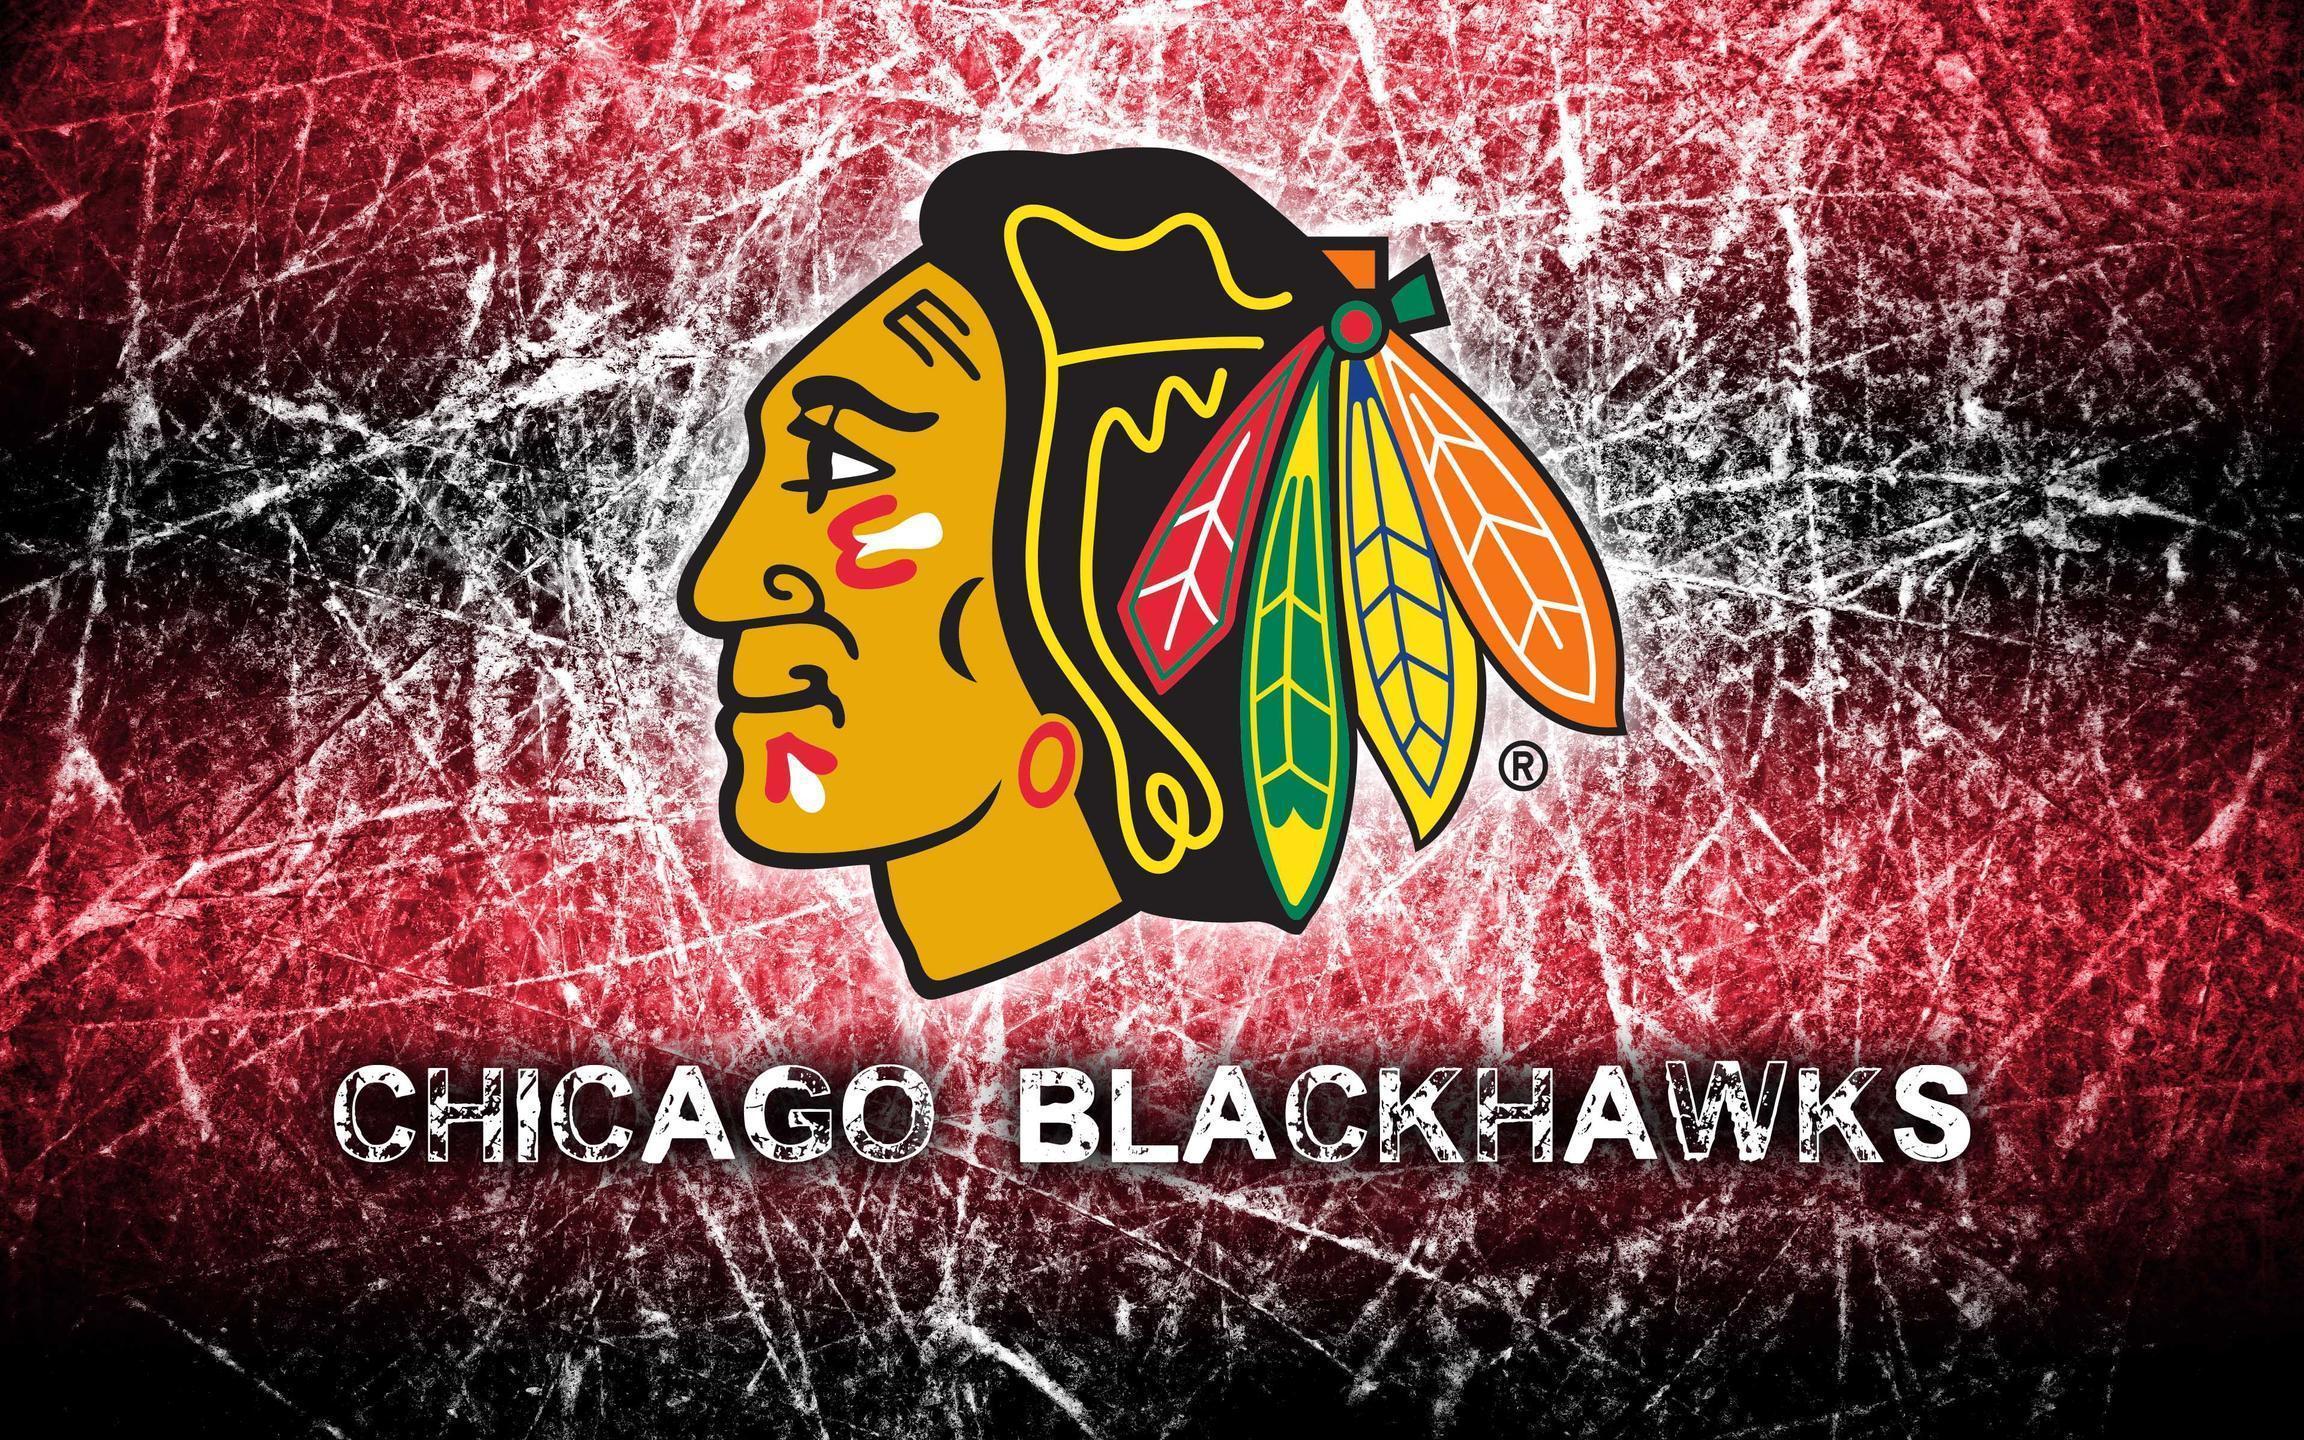 Chicago Blackhawks Wallpaper Related Keywords